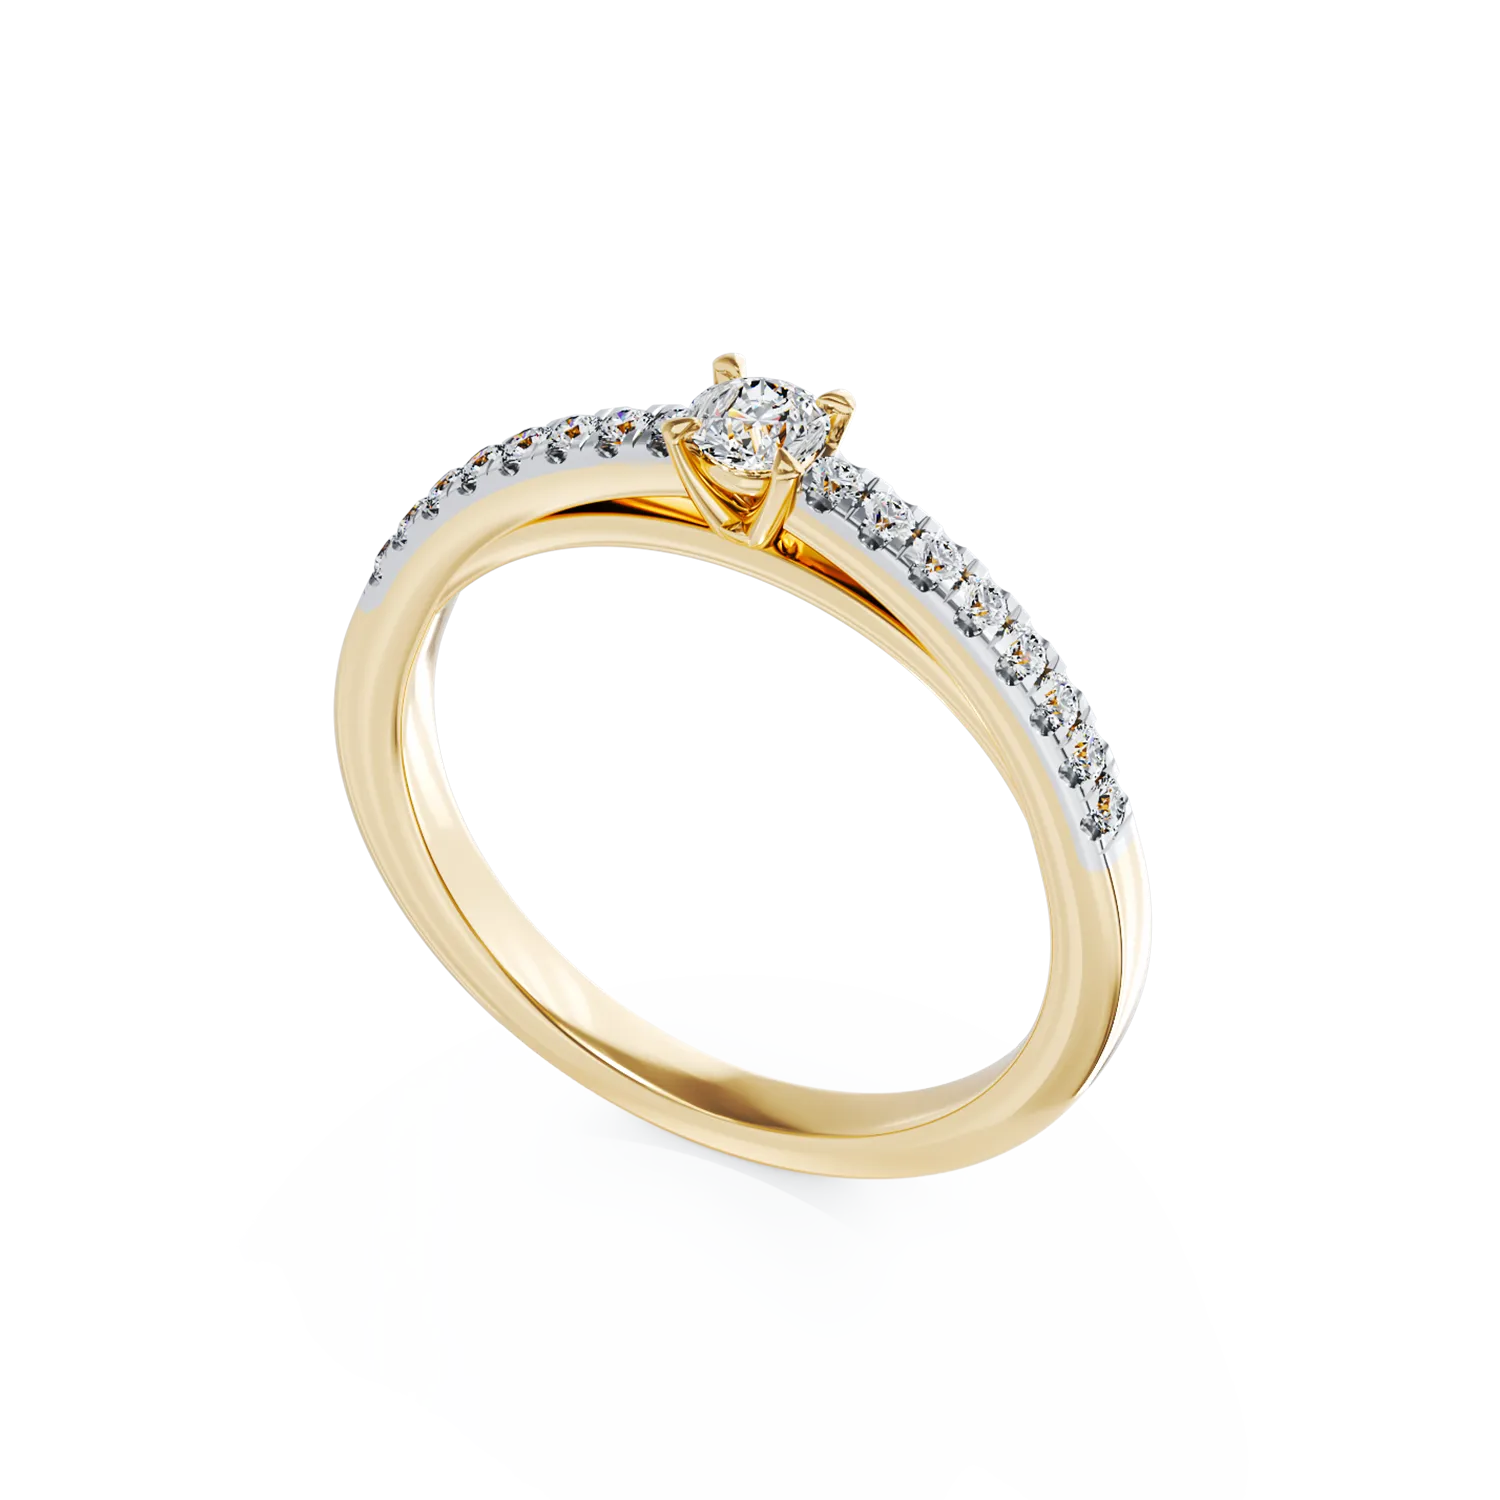 Eljegyzési gyűrű 18K-os sárga aranyból 0,11ct gyémánttal és 0,145ct gyémántokkal. Gramm: 2.05